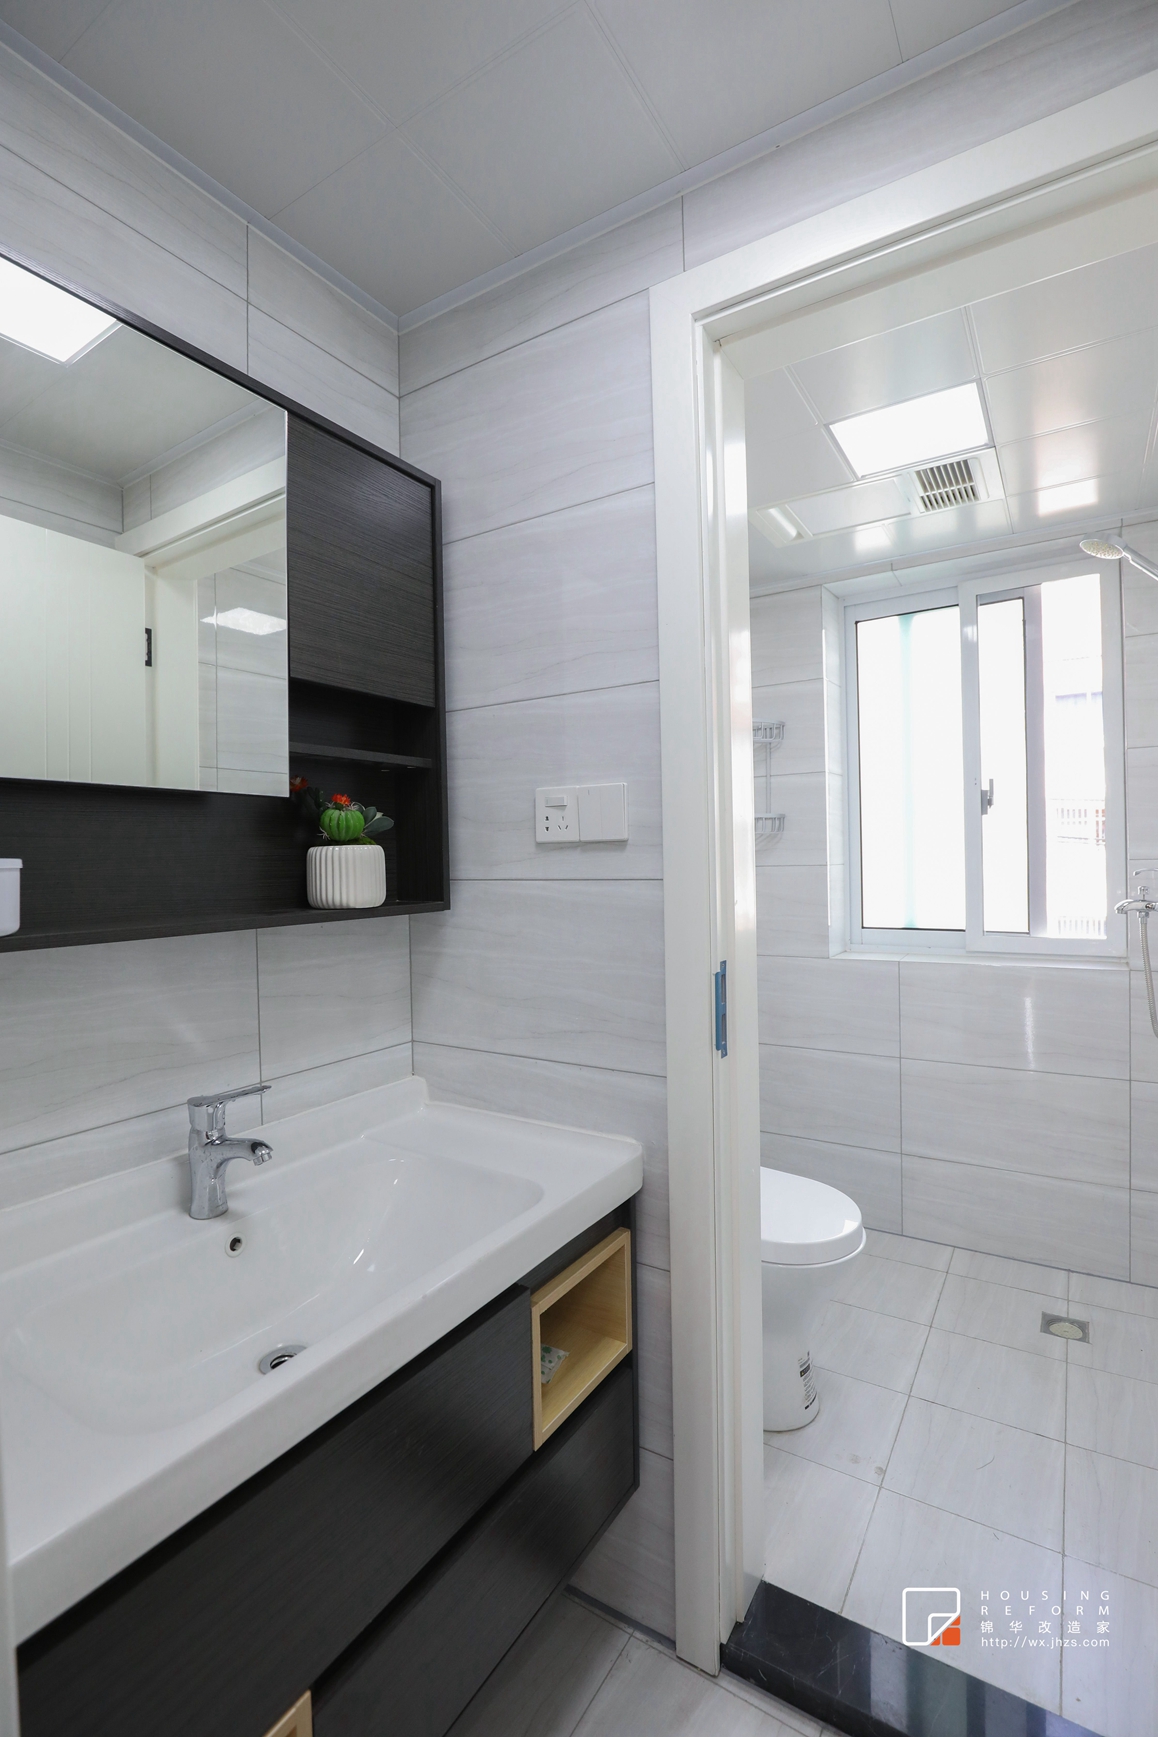 北欧风格-沁园新村-一室两厅-60平-户型图-卫生间-装修效果实景图